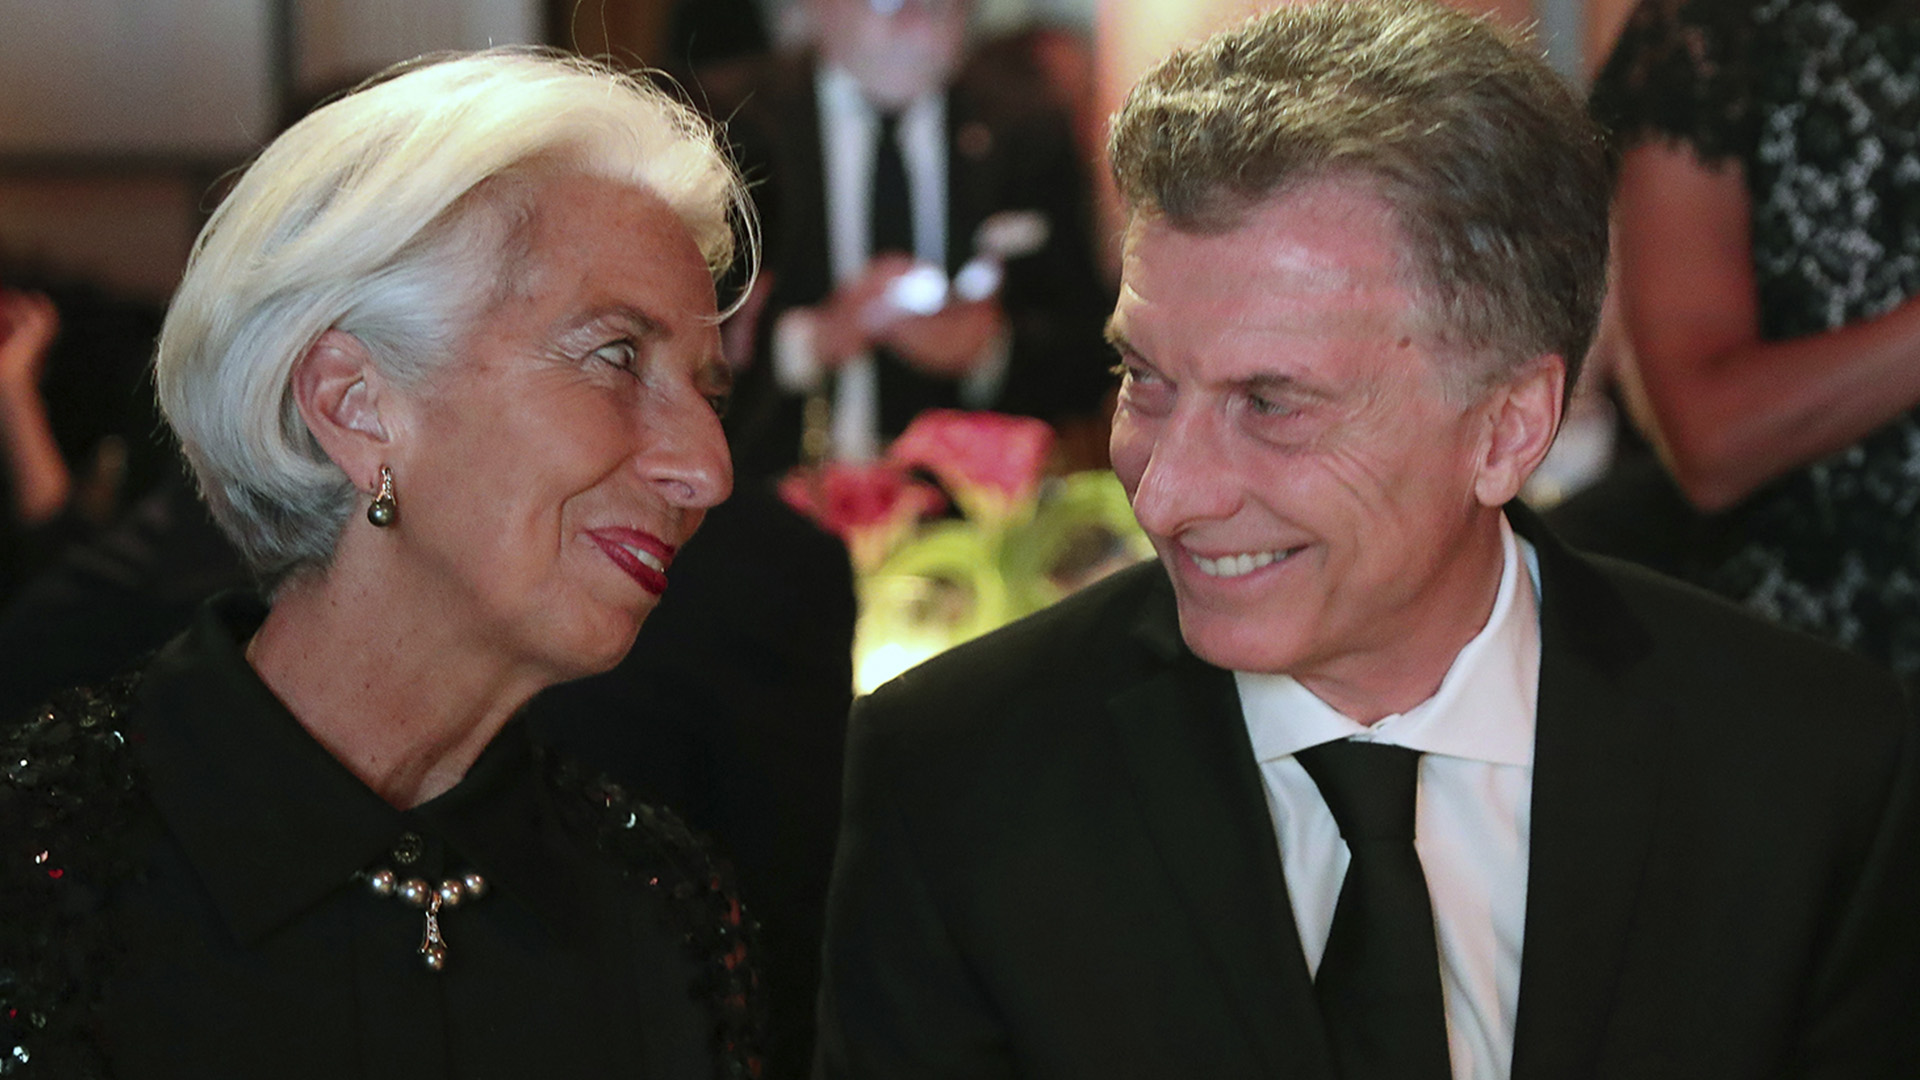 El FMI analizará el megapréstamo que le dio a Macri